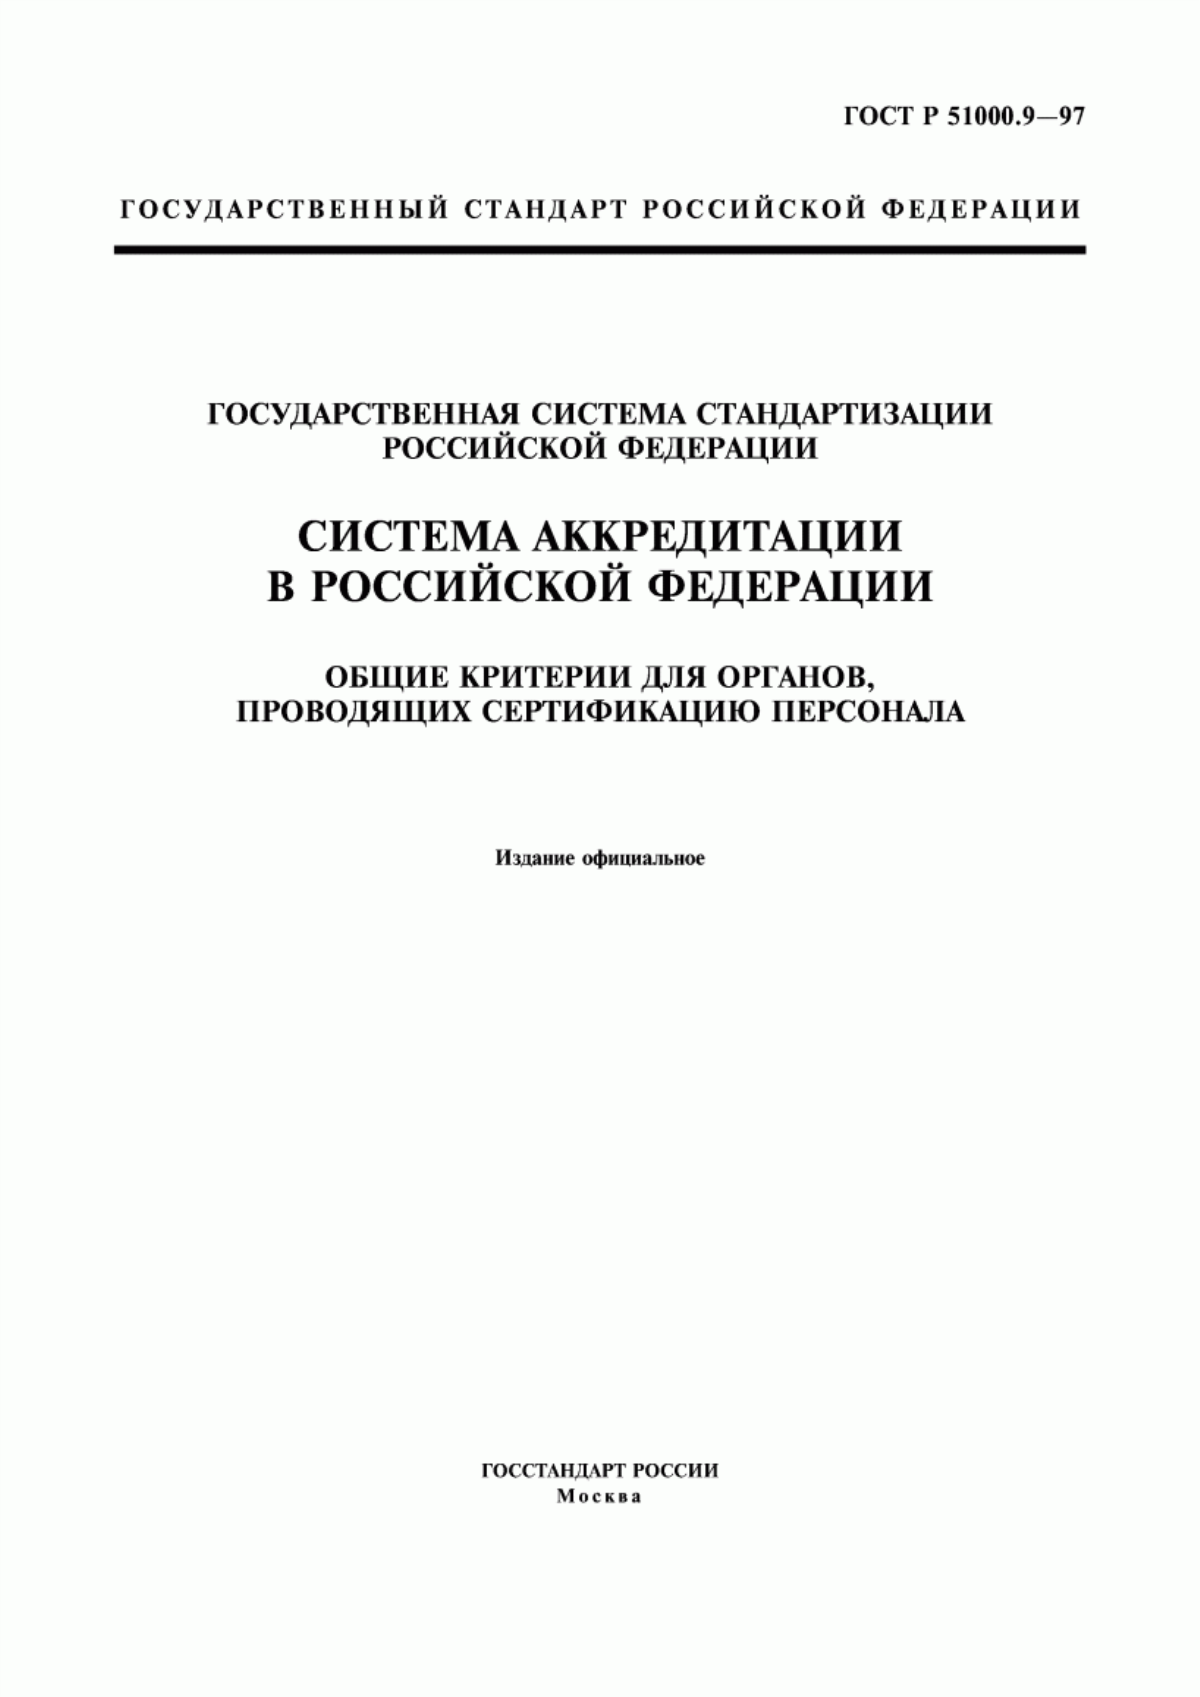 ГОСТ Р 51000.9-97 Государственная система стандартизации Российской Федерации. Система аккредитации в Российской Федерации. Общие критерии для органов, проводящих сертификацию персонала